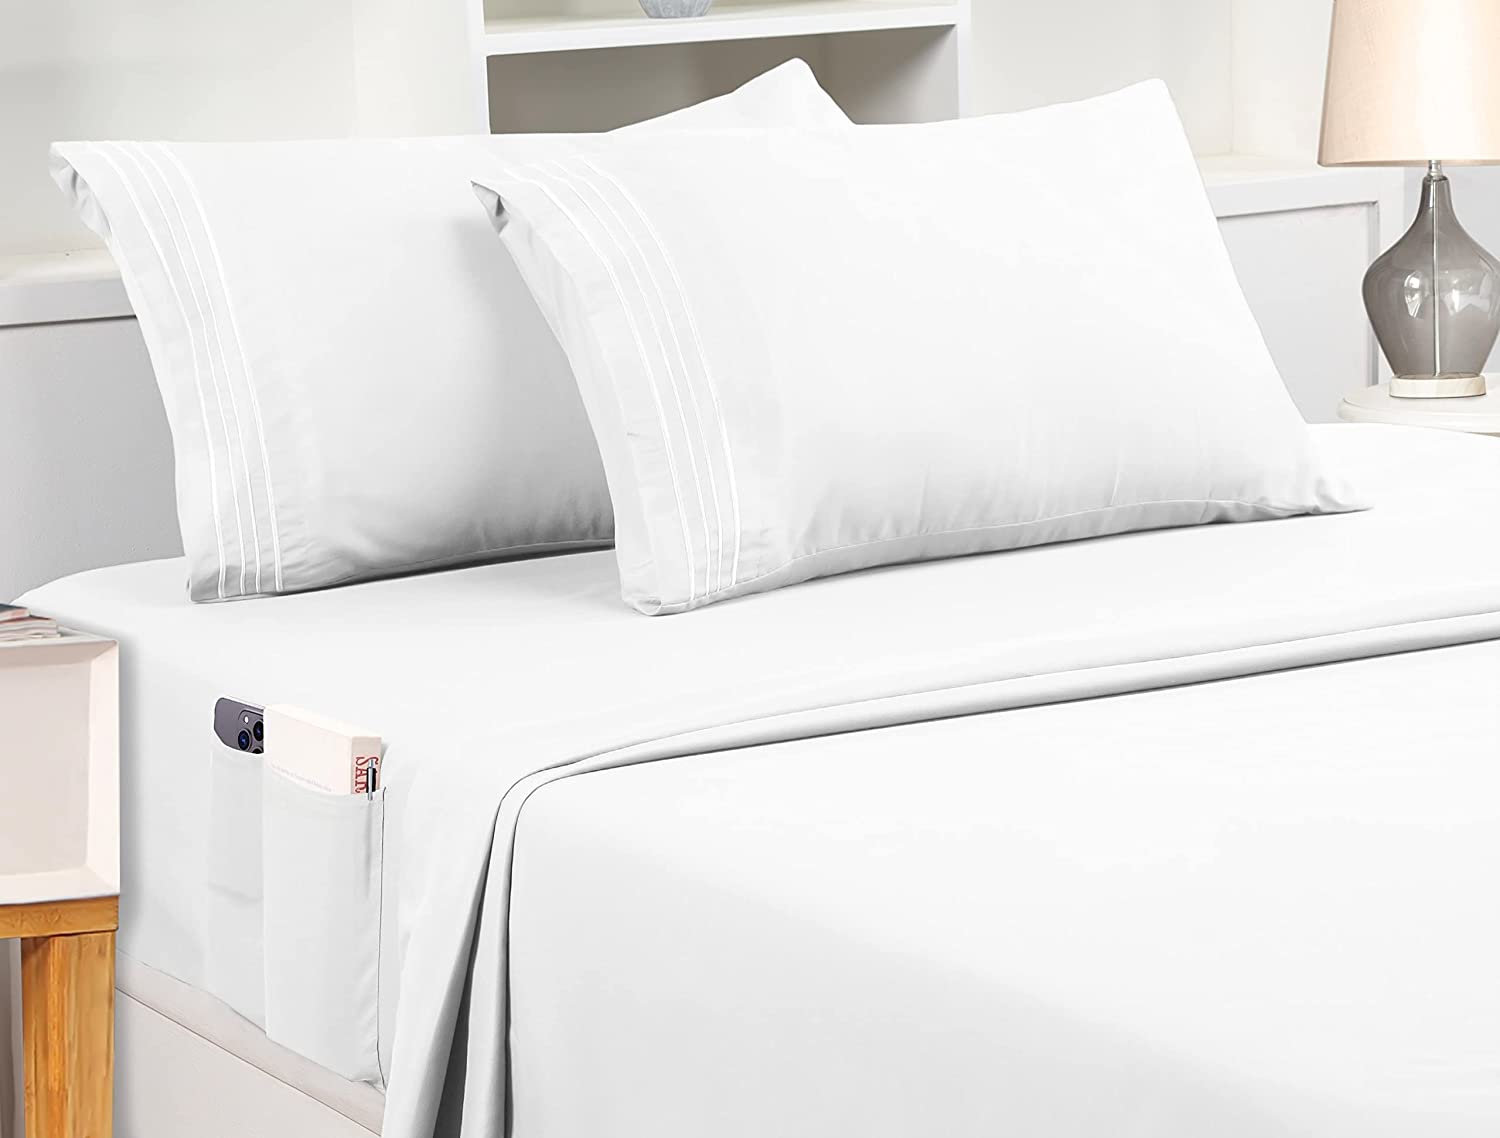 Utopia Bedding Queen Sheet Set – Soft Microfiber 4 Piece Luxury